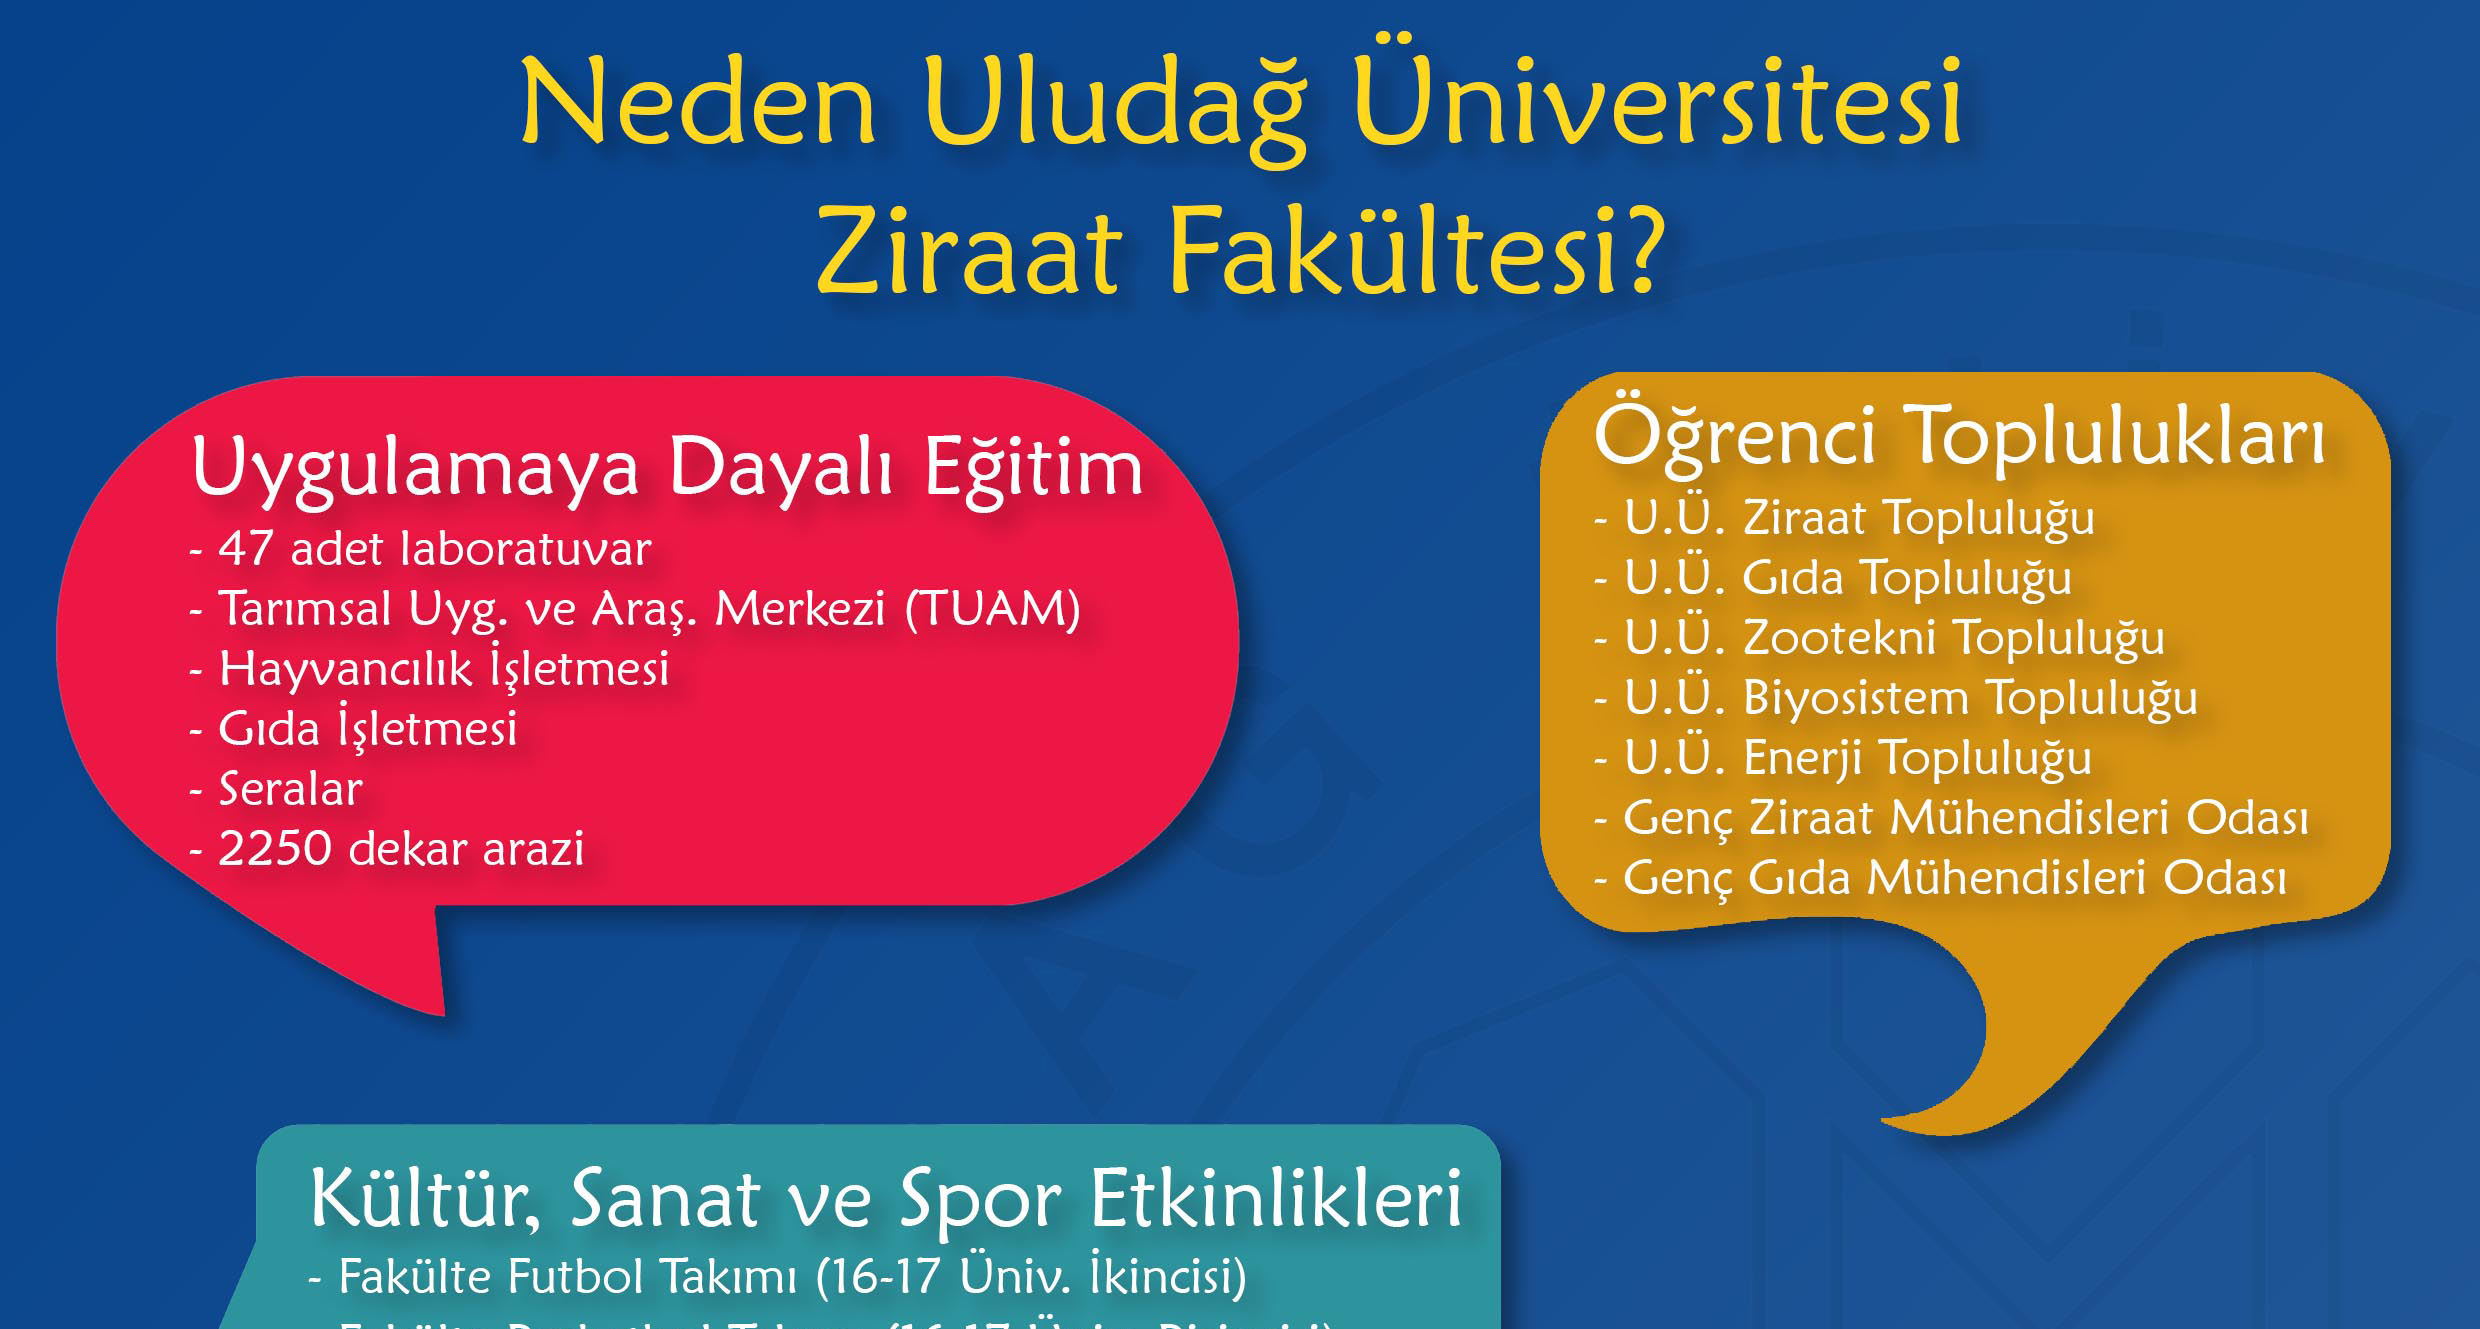  Neden Uludağ Üniversitesi Ziraat Fakültesi? 